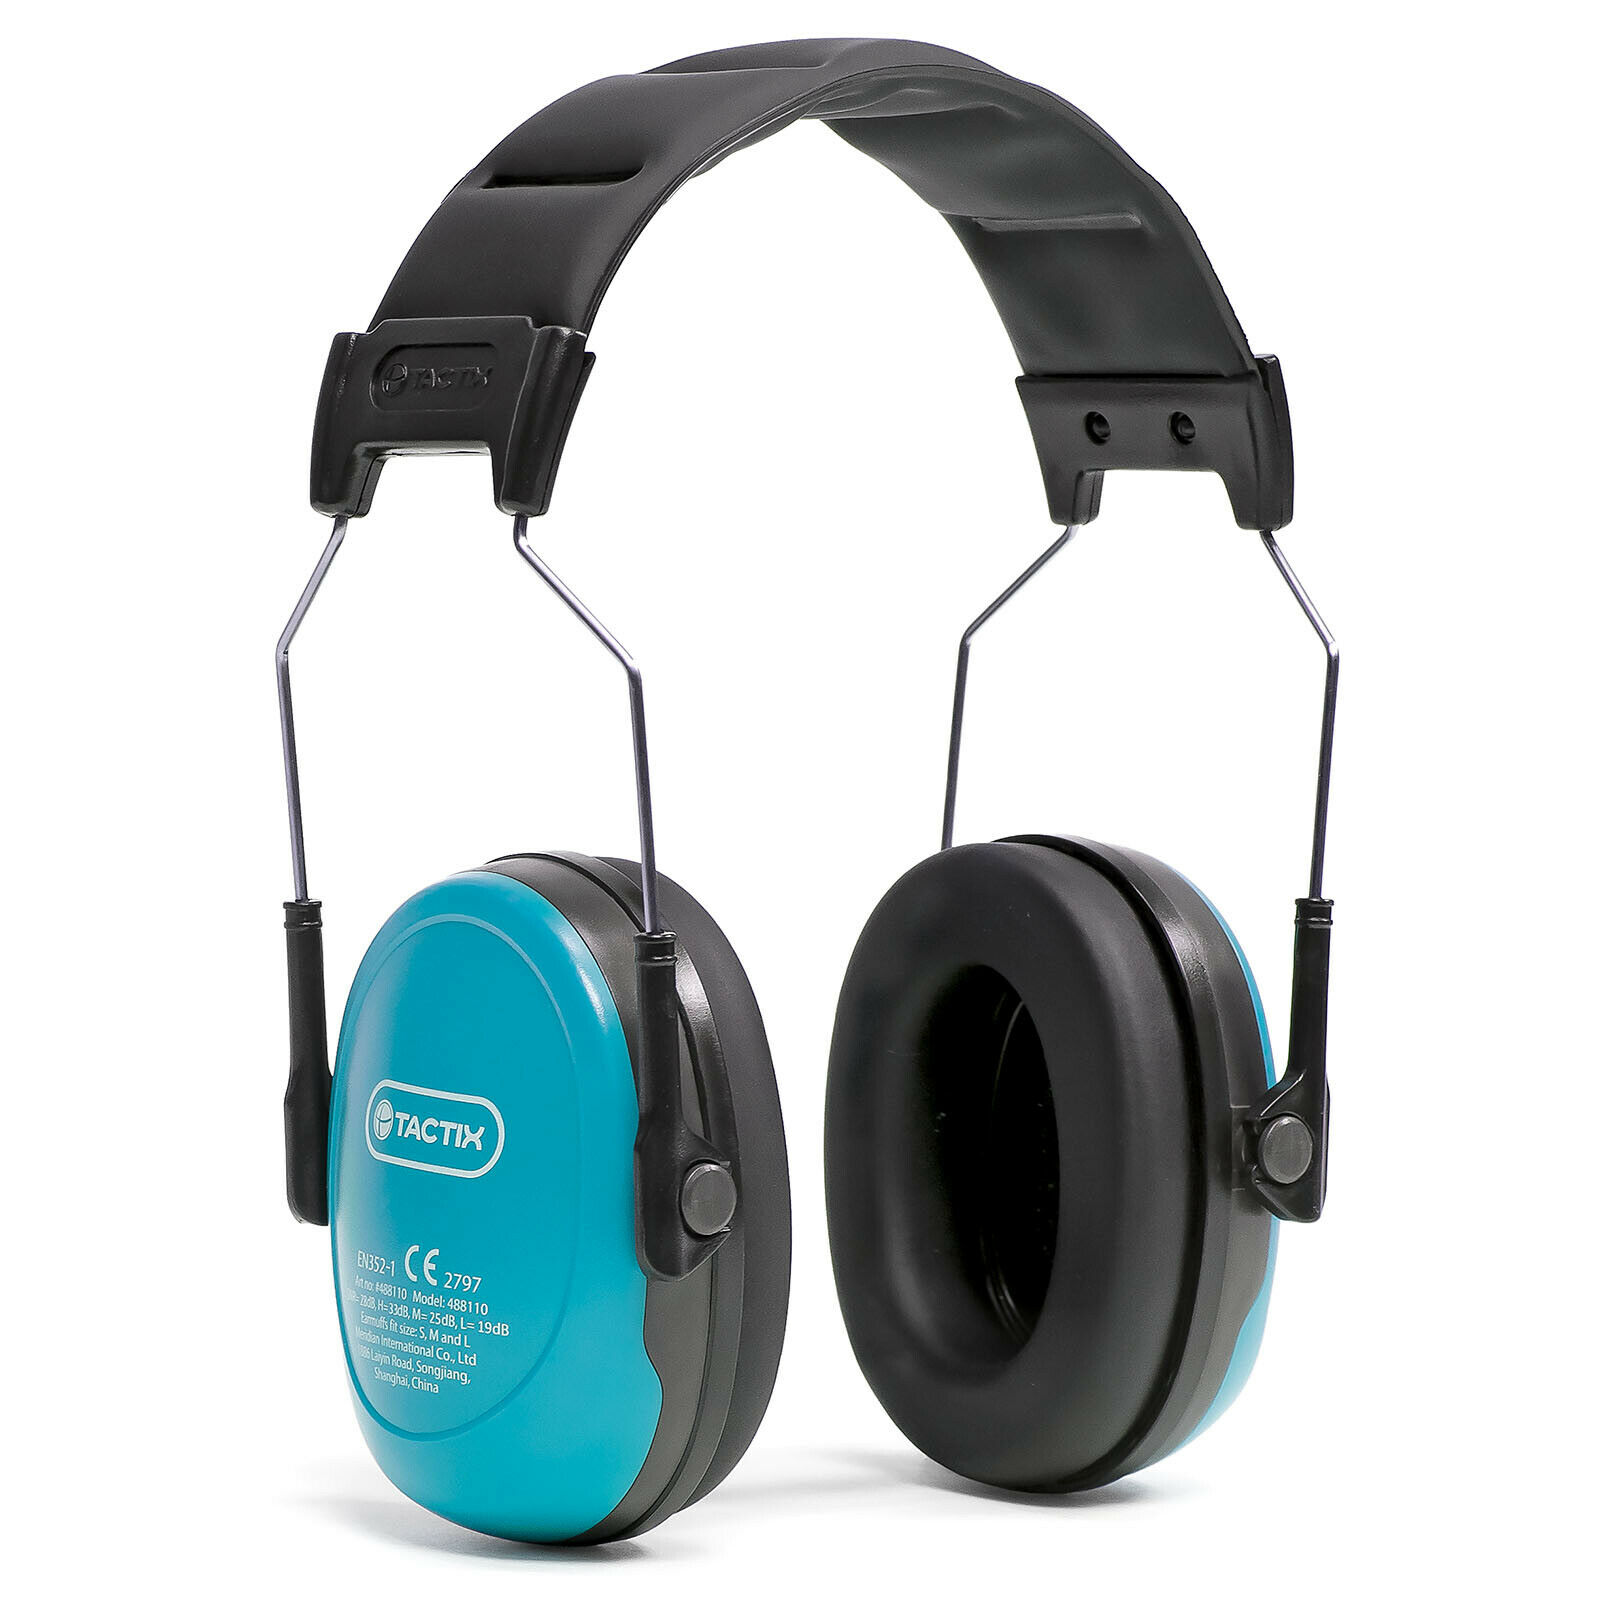 TACTIX Kinder Kapselgehörschutz Lärmschutz 2Farben gepolstert leicht CE-SNR29dB Blau